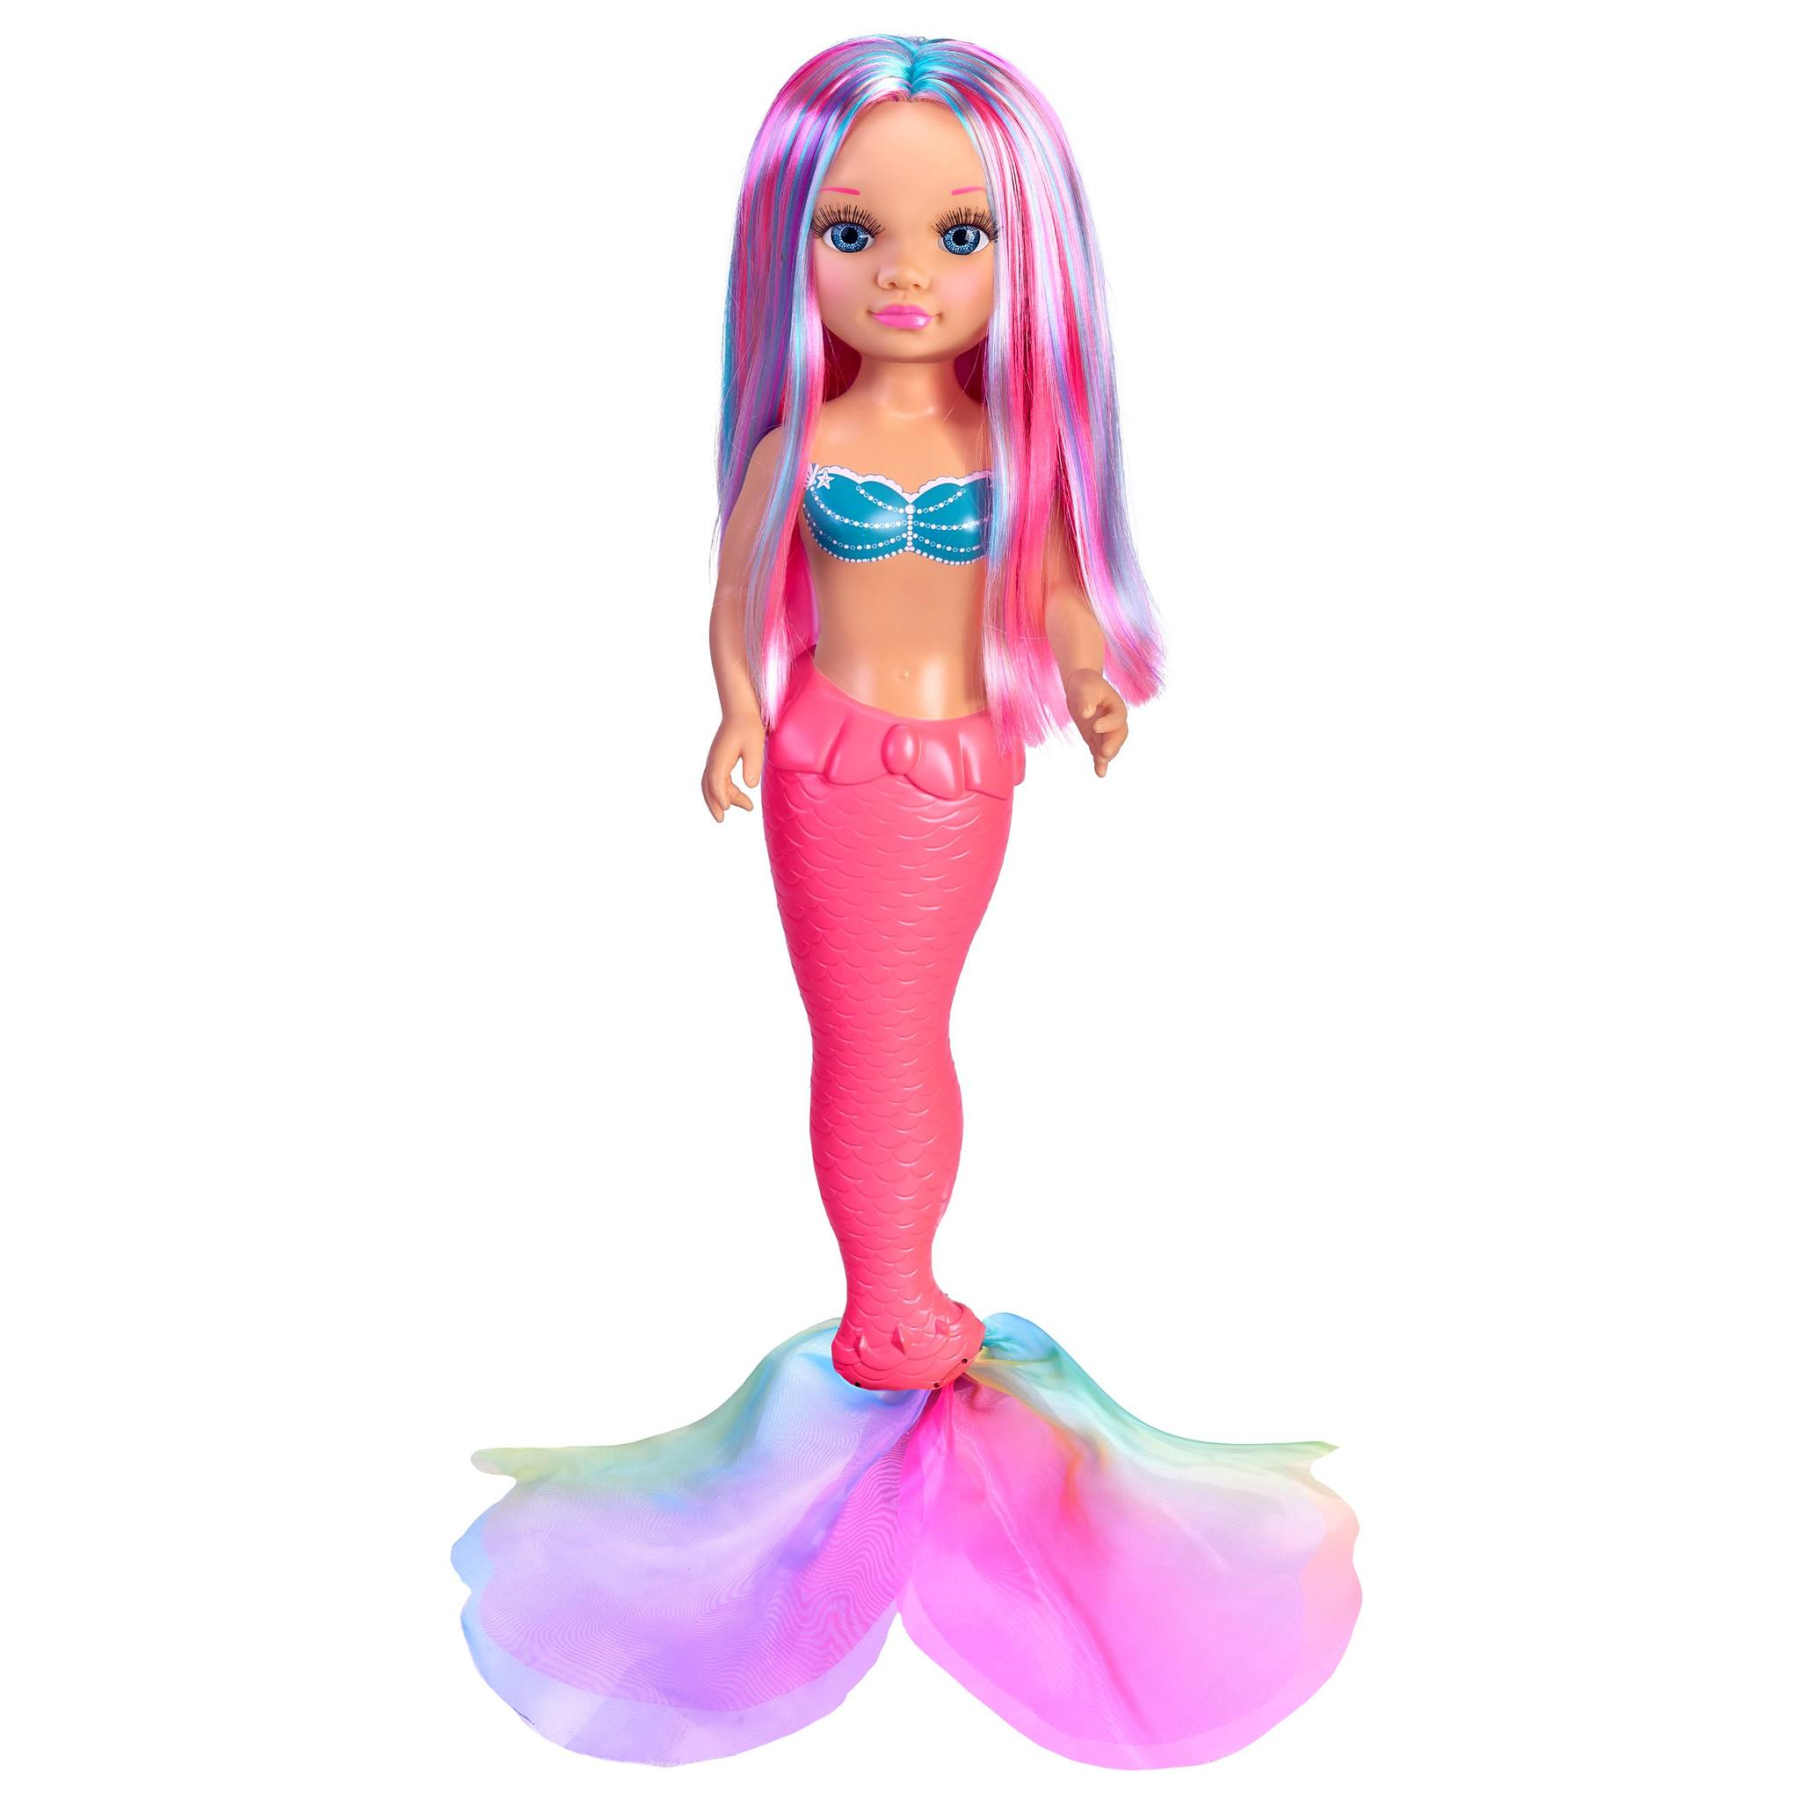 Nancy coral, bambola nancy da 42 cm sirenetta con coda in tessuto colorato, con lunghi capelli, per bambine/i da 3 anni - NANCY